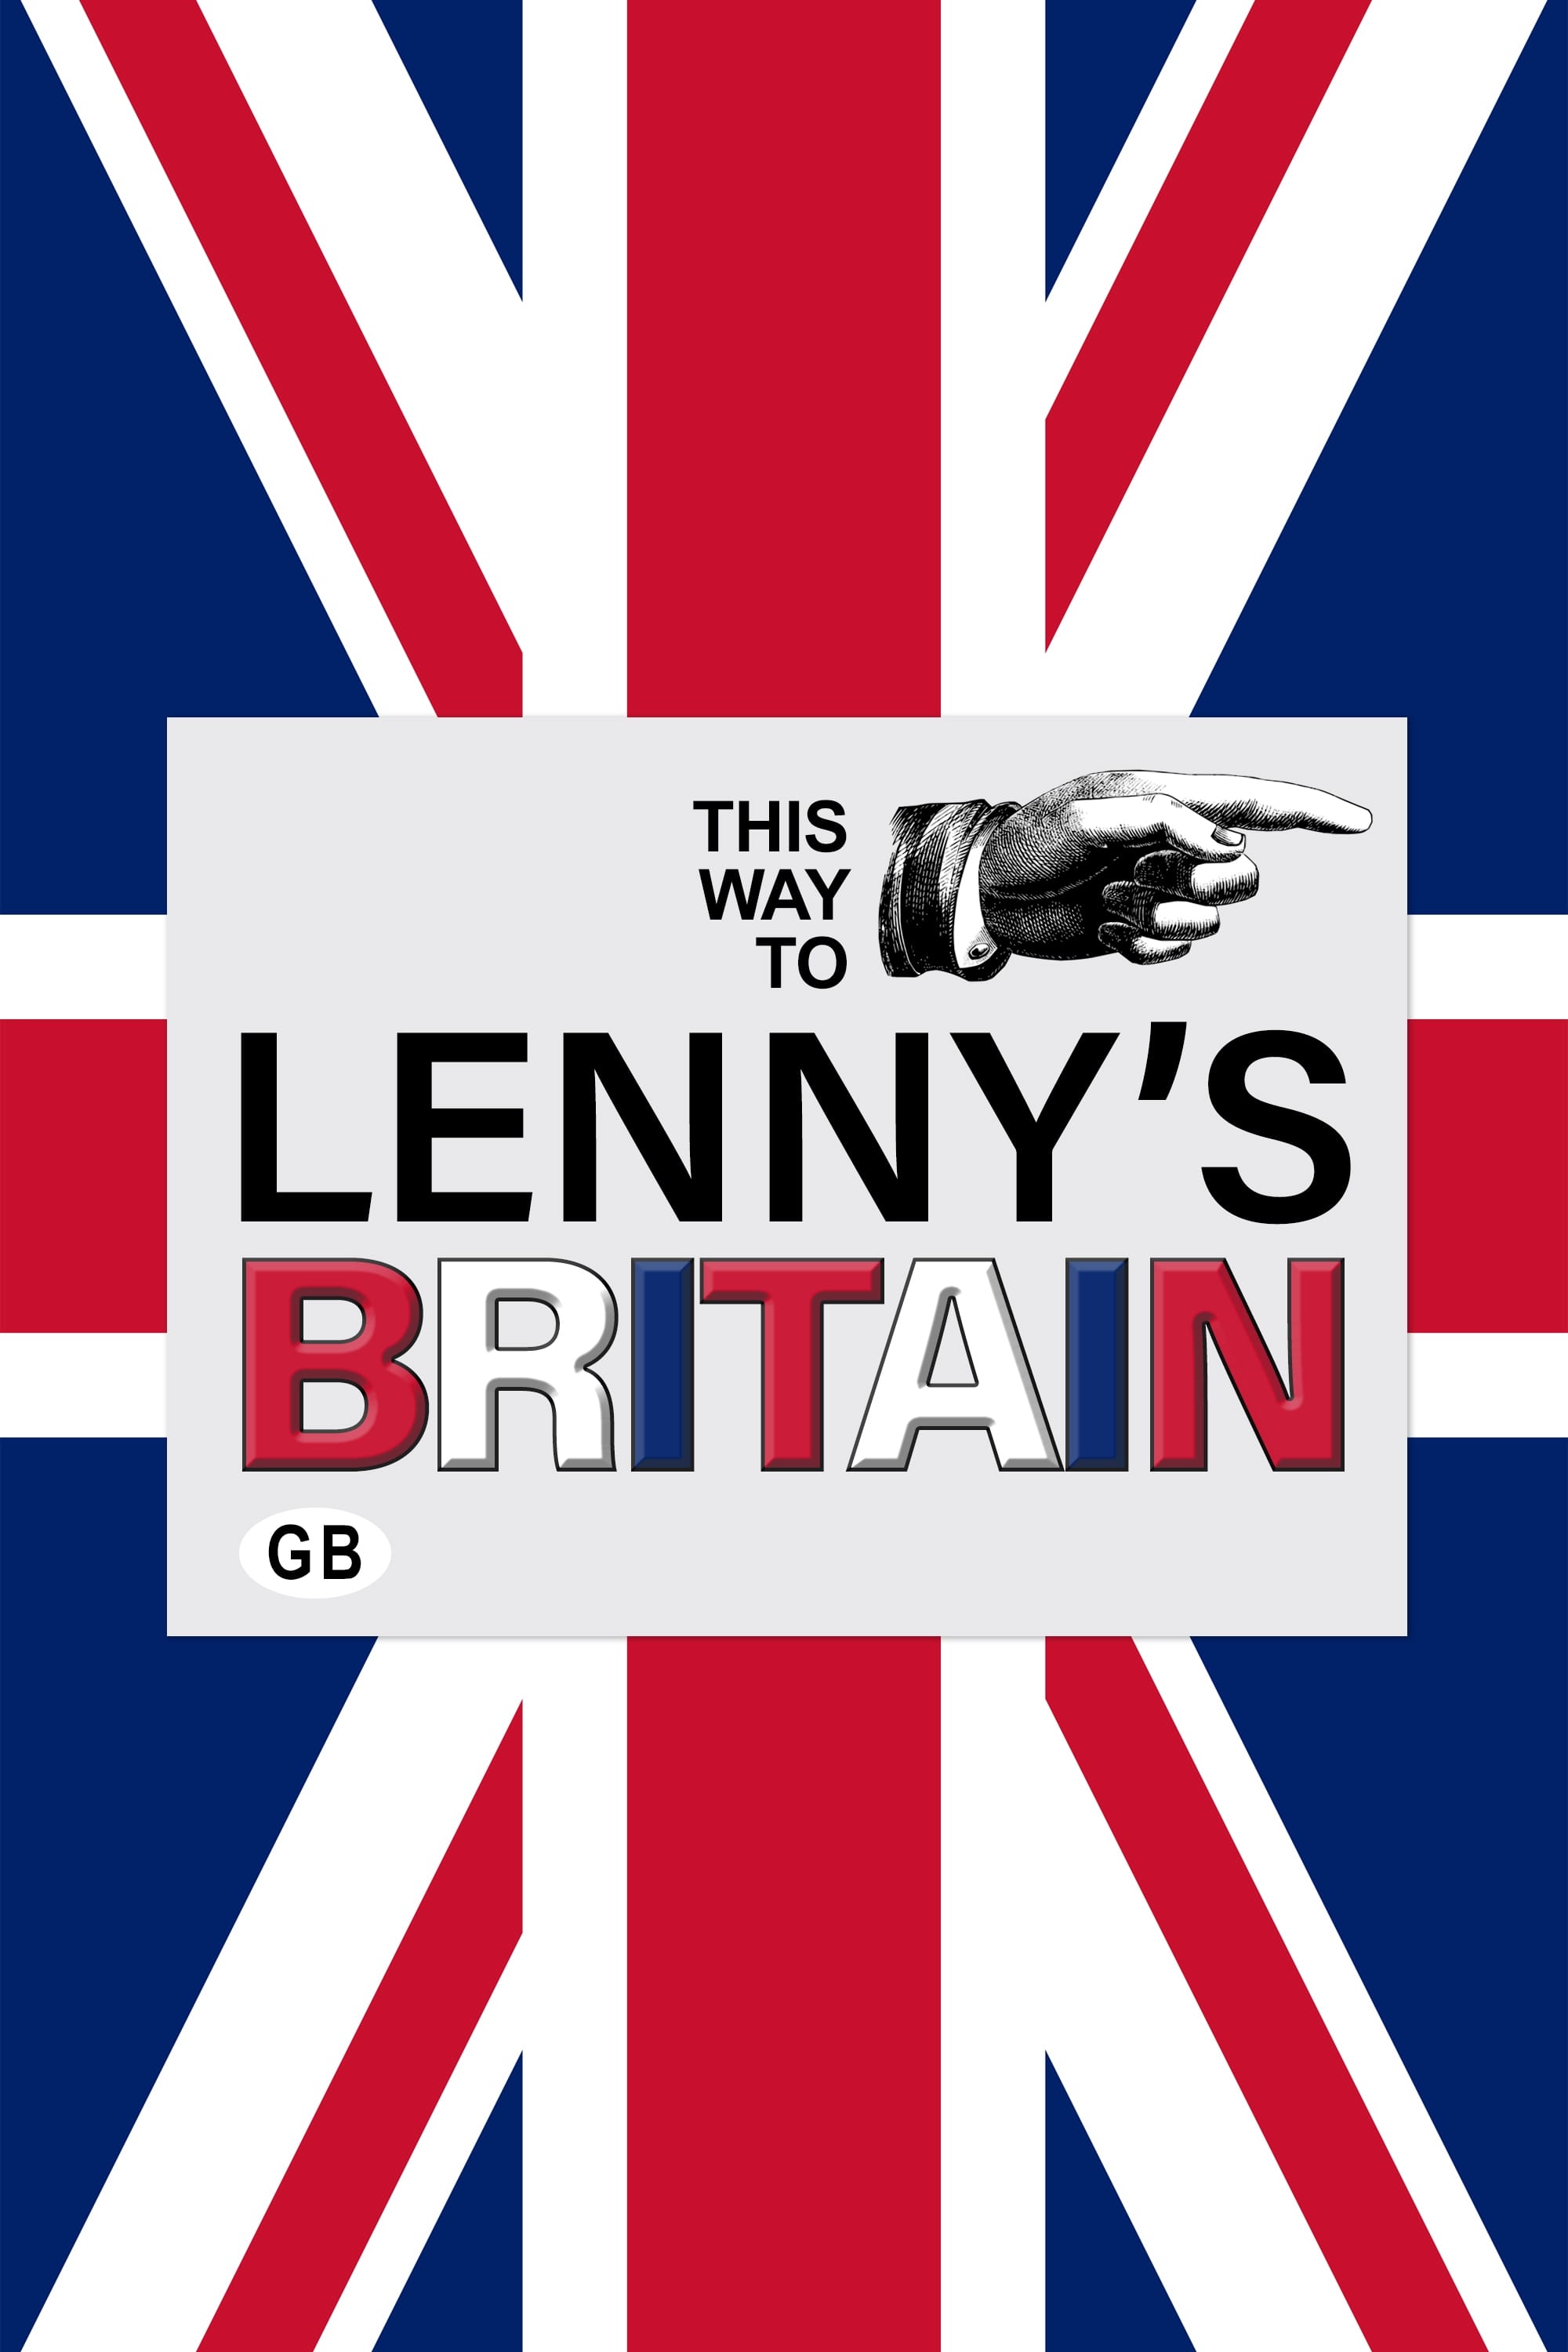 Lenny's Britain